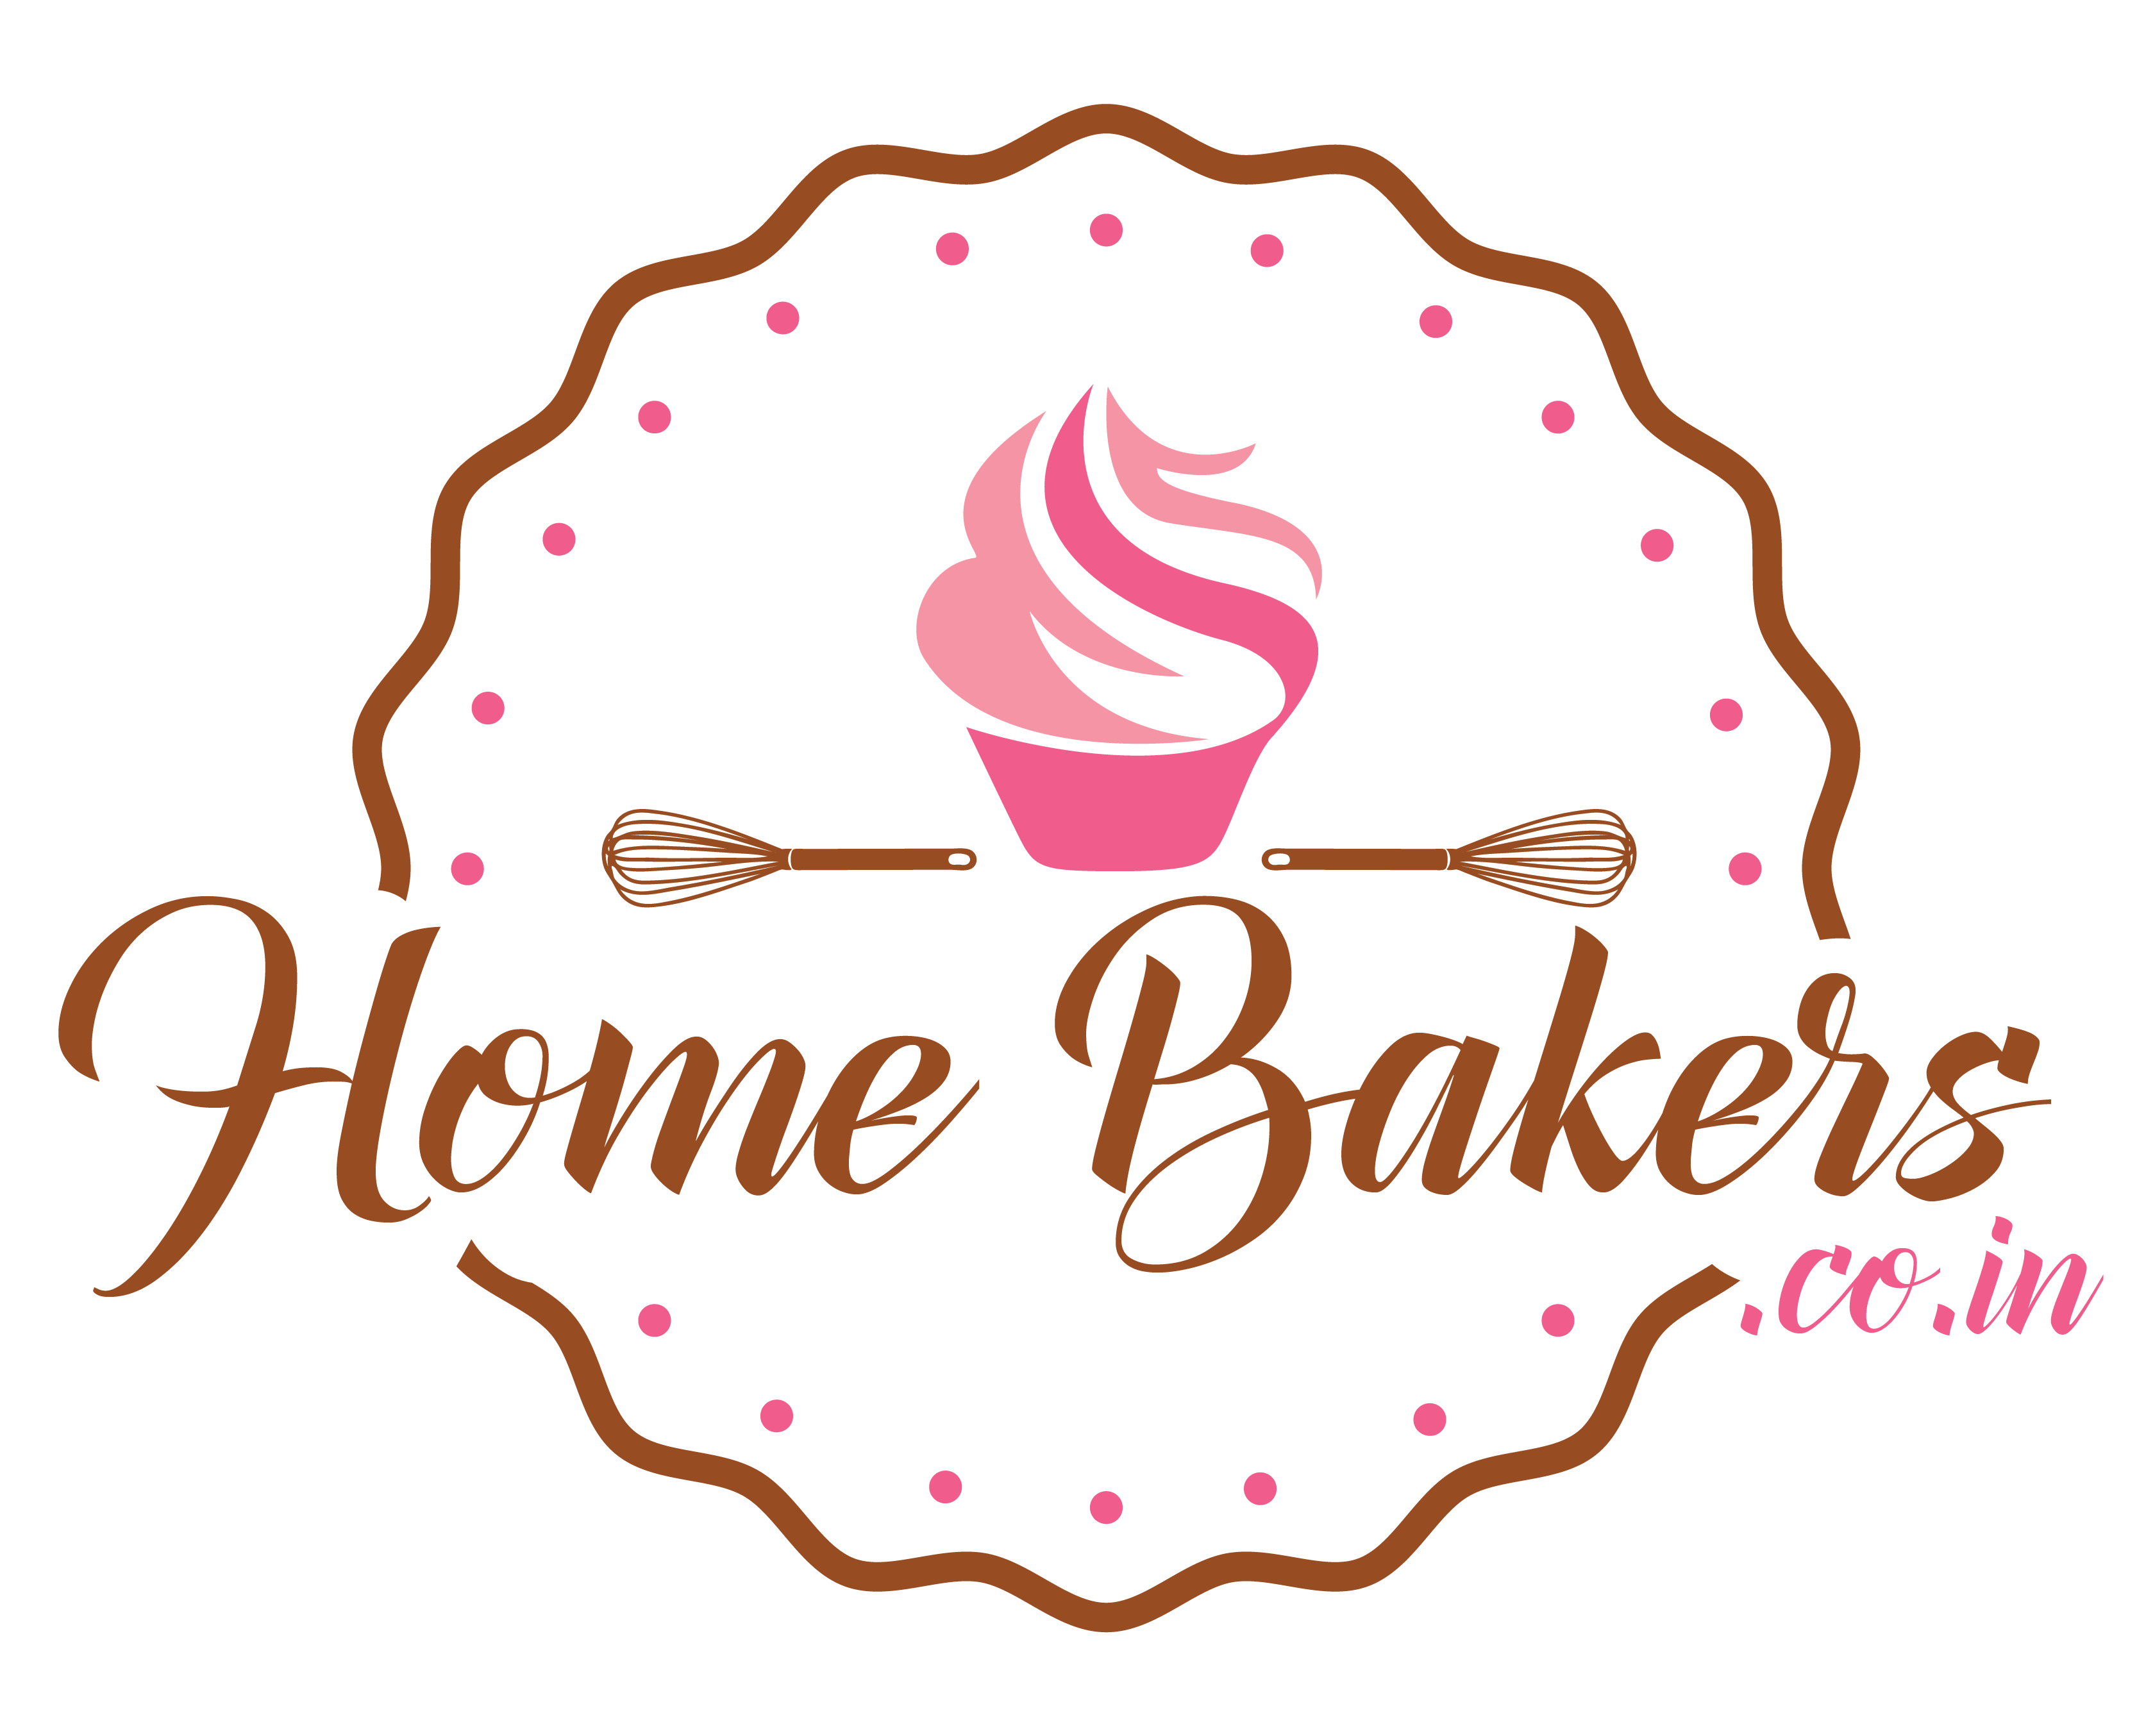 HomeBakers - Homebakers.co.in